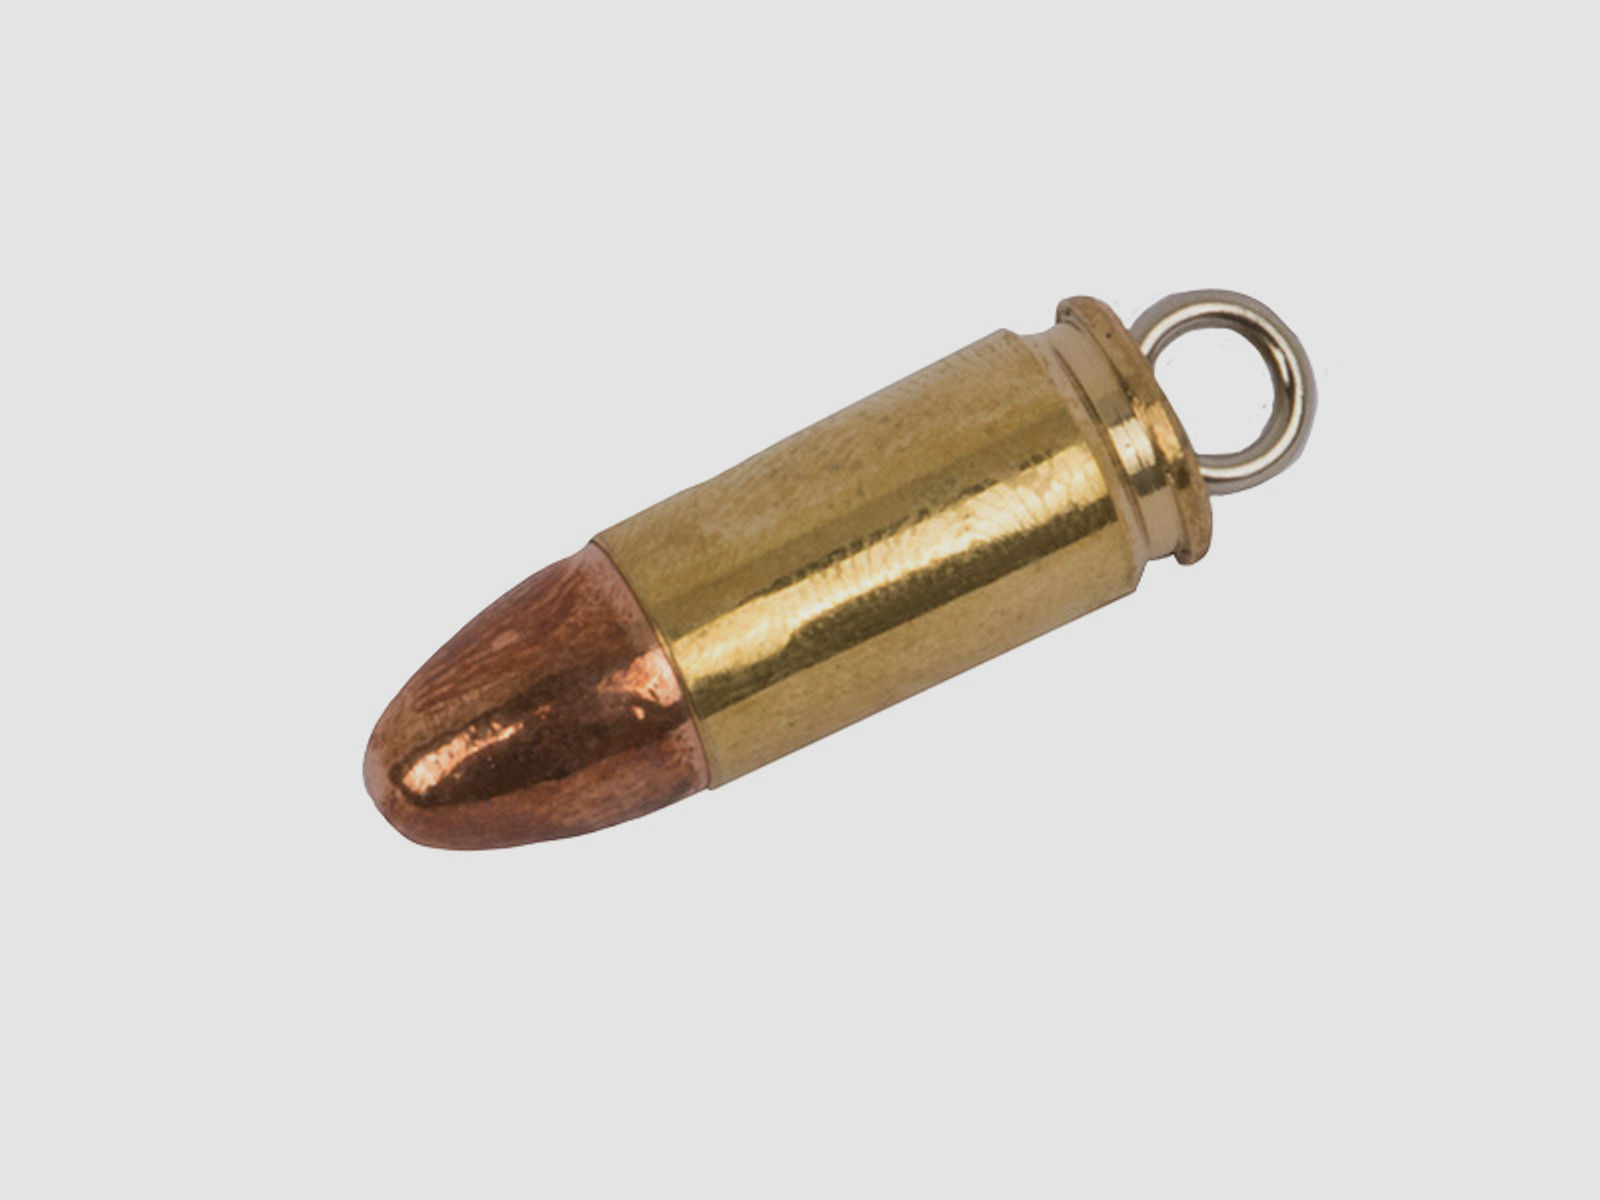 SchlĂĽsselanhĂ¤nger Kaliber 9 mm x 19 mm 9 mm Luger Hohlspitz handgefertigt